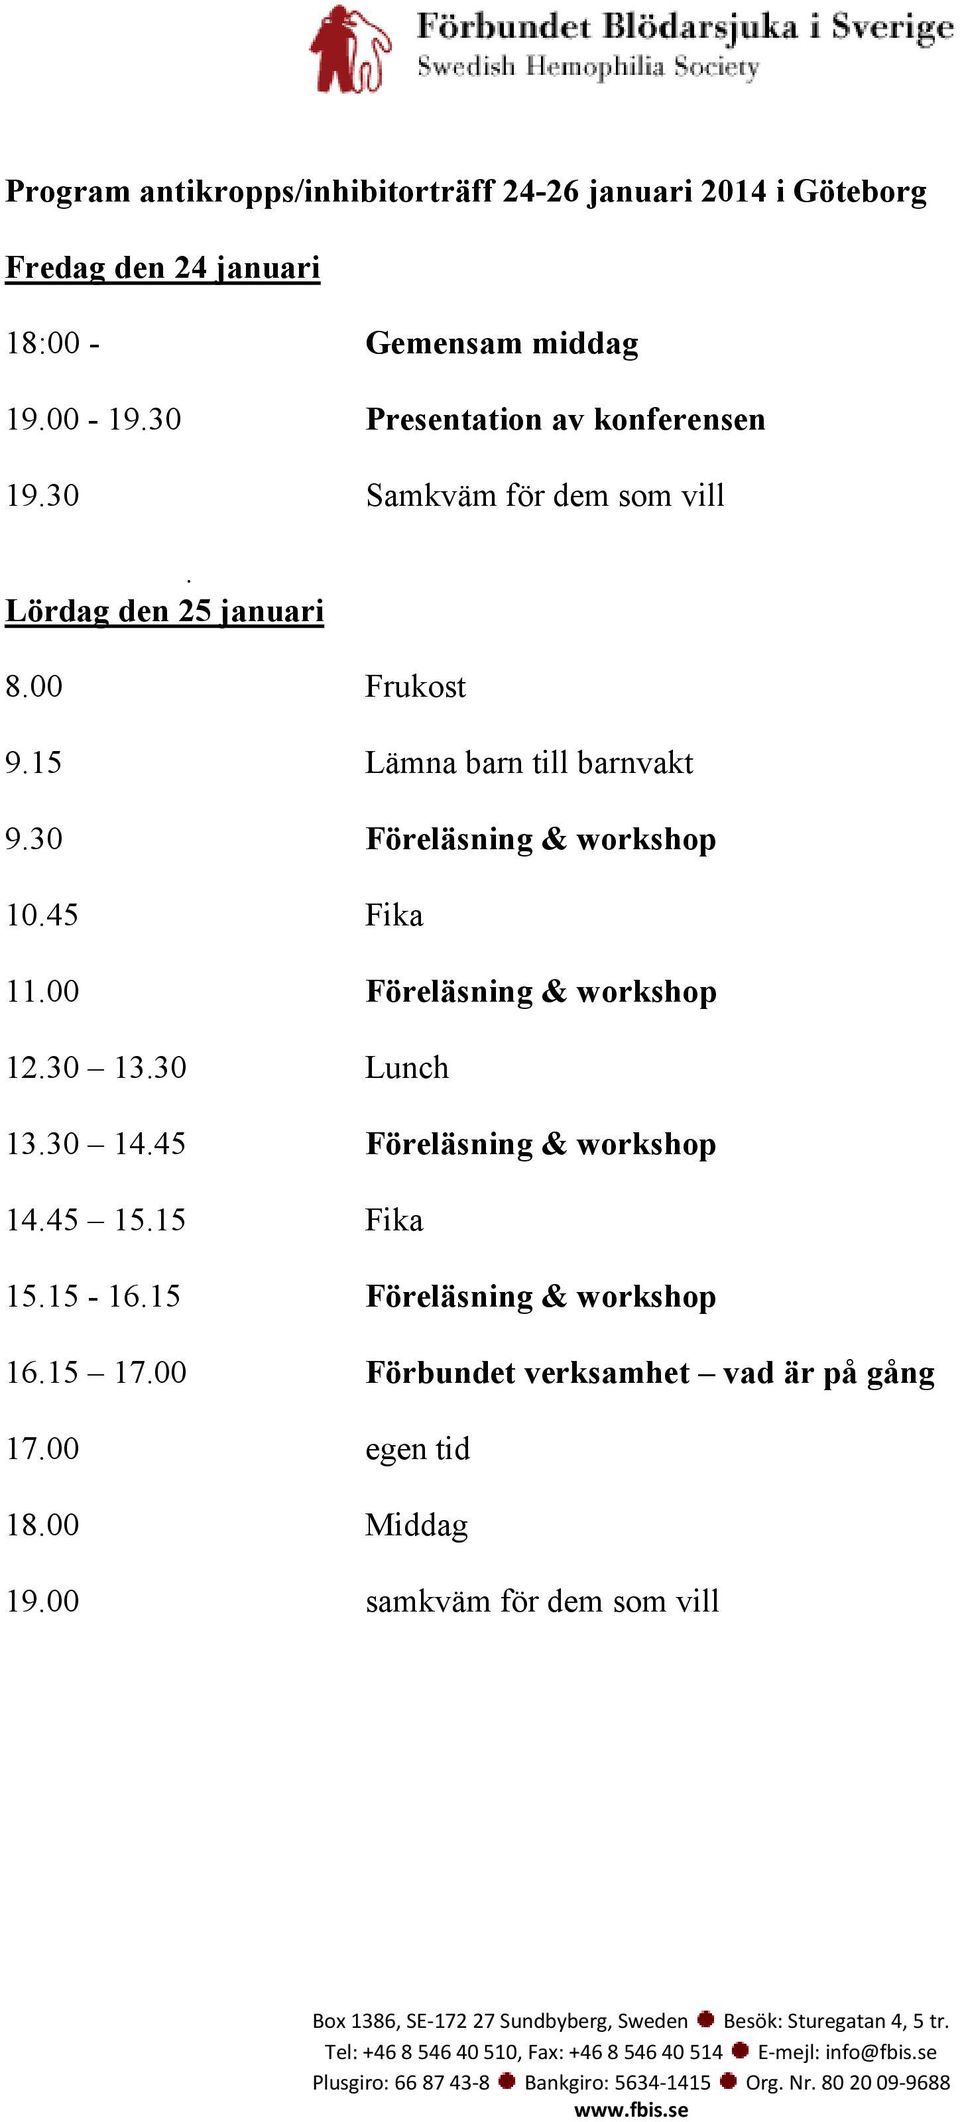 30 Föreläsning & workshop 10.45 Fika 11.00 Föreläsning & workshop 12.30 13.30 Lunch 13.30 14.45 Föreläsning & workshop 14.45 15.